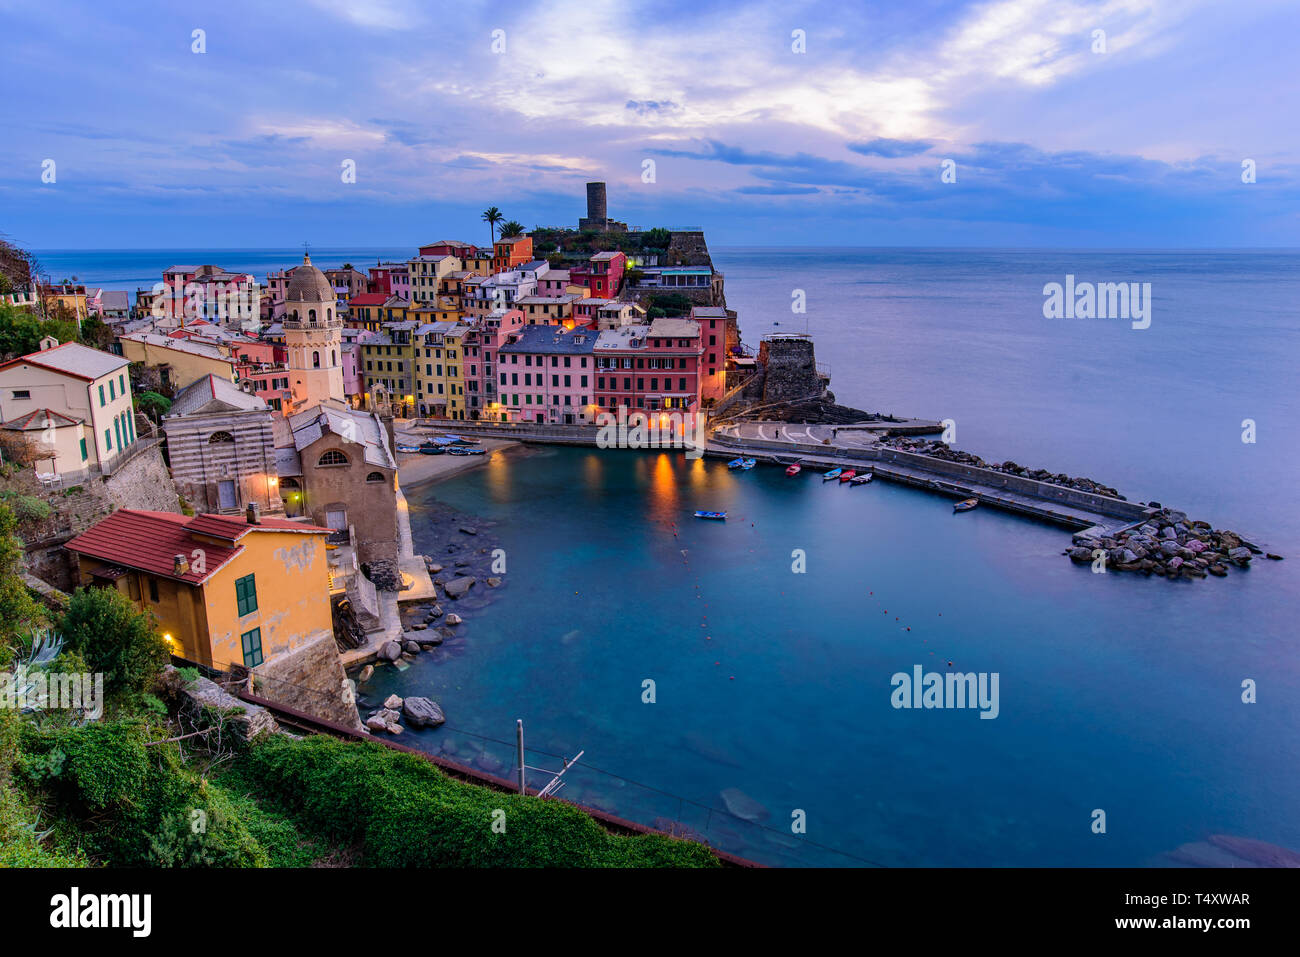 Sonnenuntergang von Vernazza, einer der fünf mediterranen Dörfer der Cinque Terre, Italien, bekannt für seine bunten Häuser und den Hafen. Stockfoto